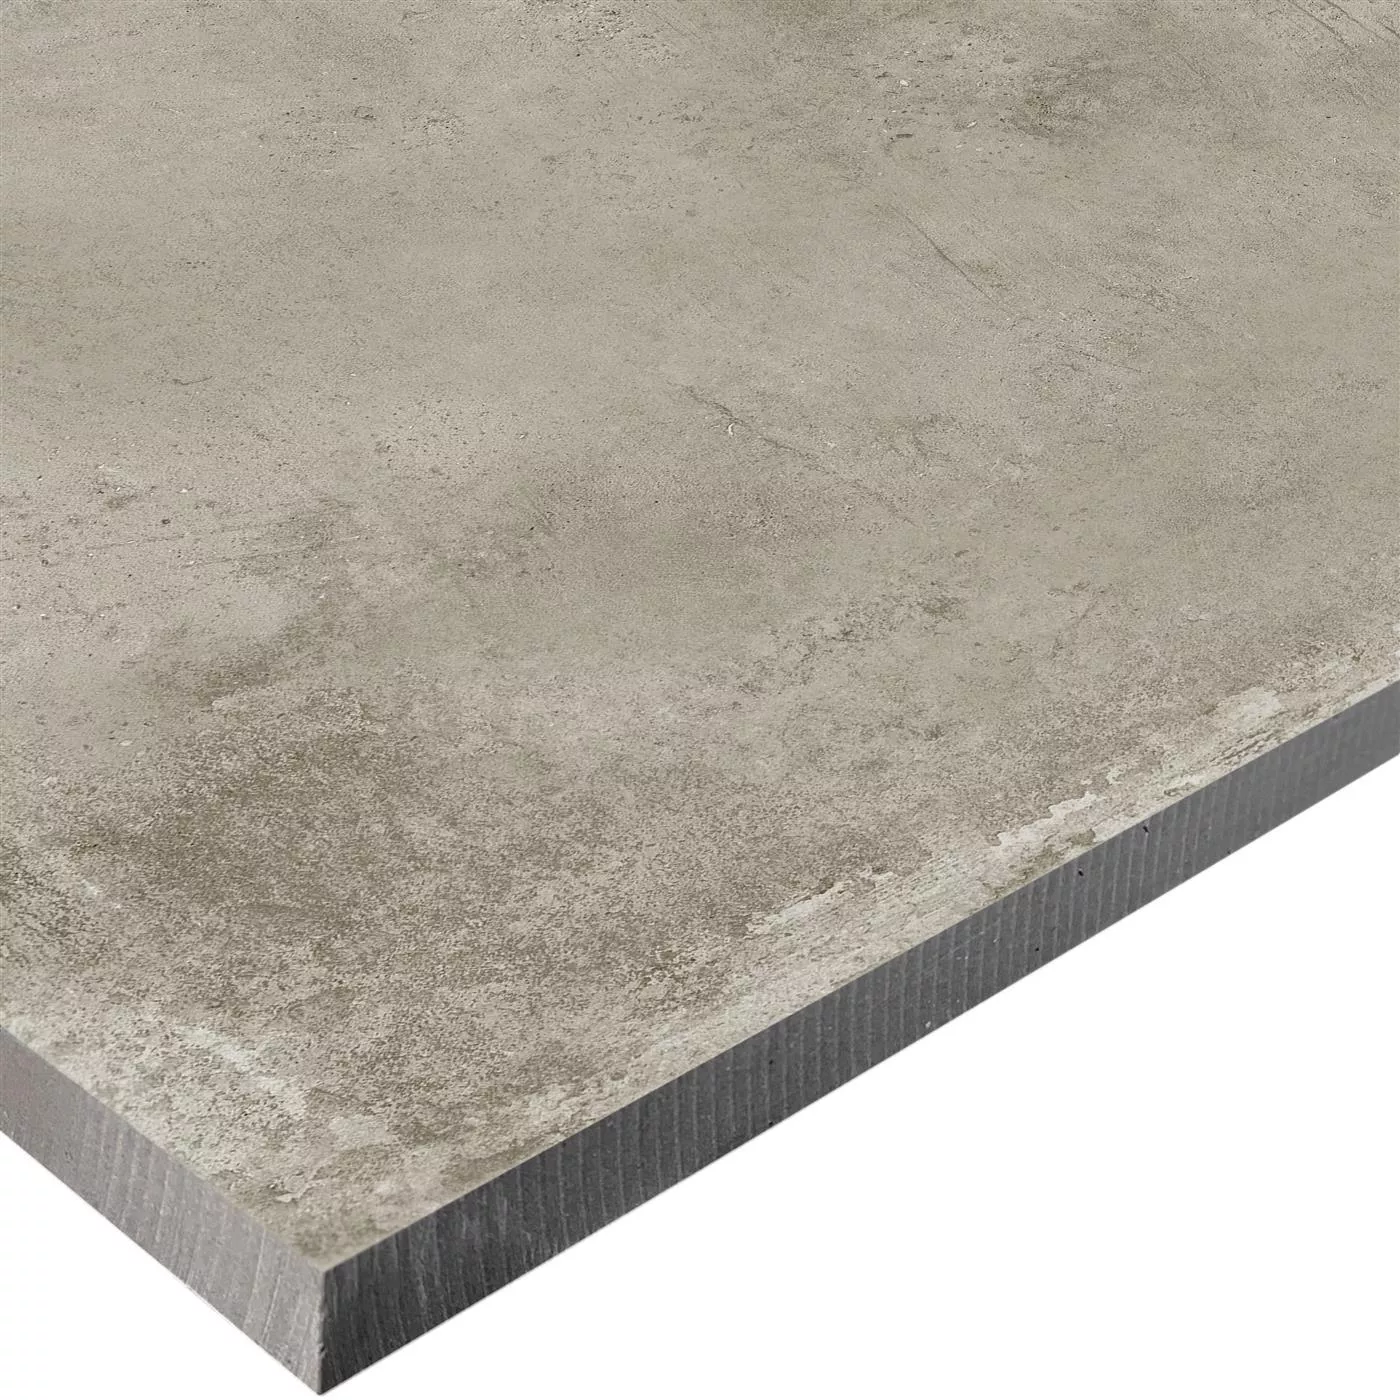 Prov Terass Klinker Cement Optik Berlin Beige 60x60cm